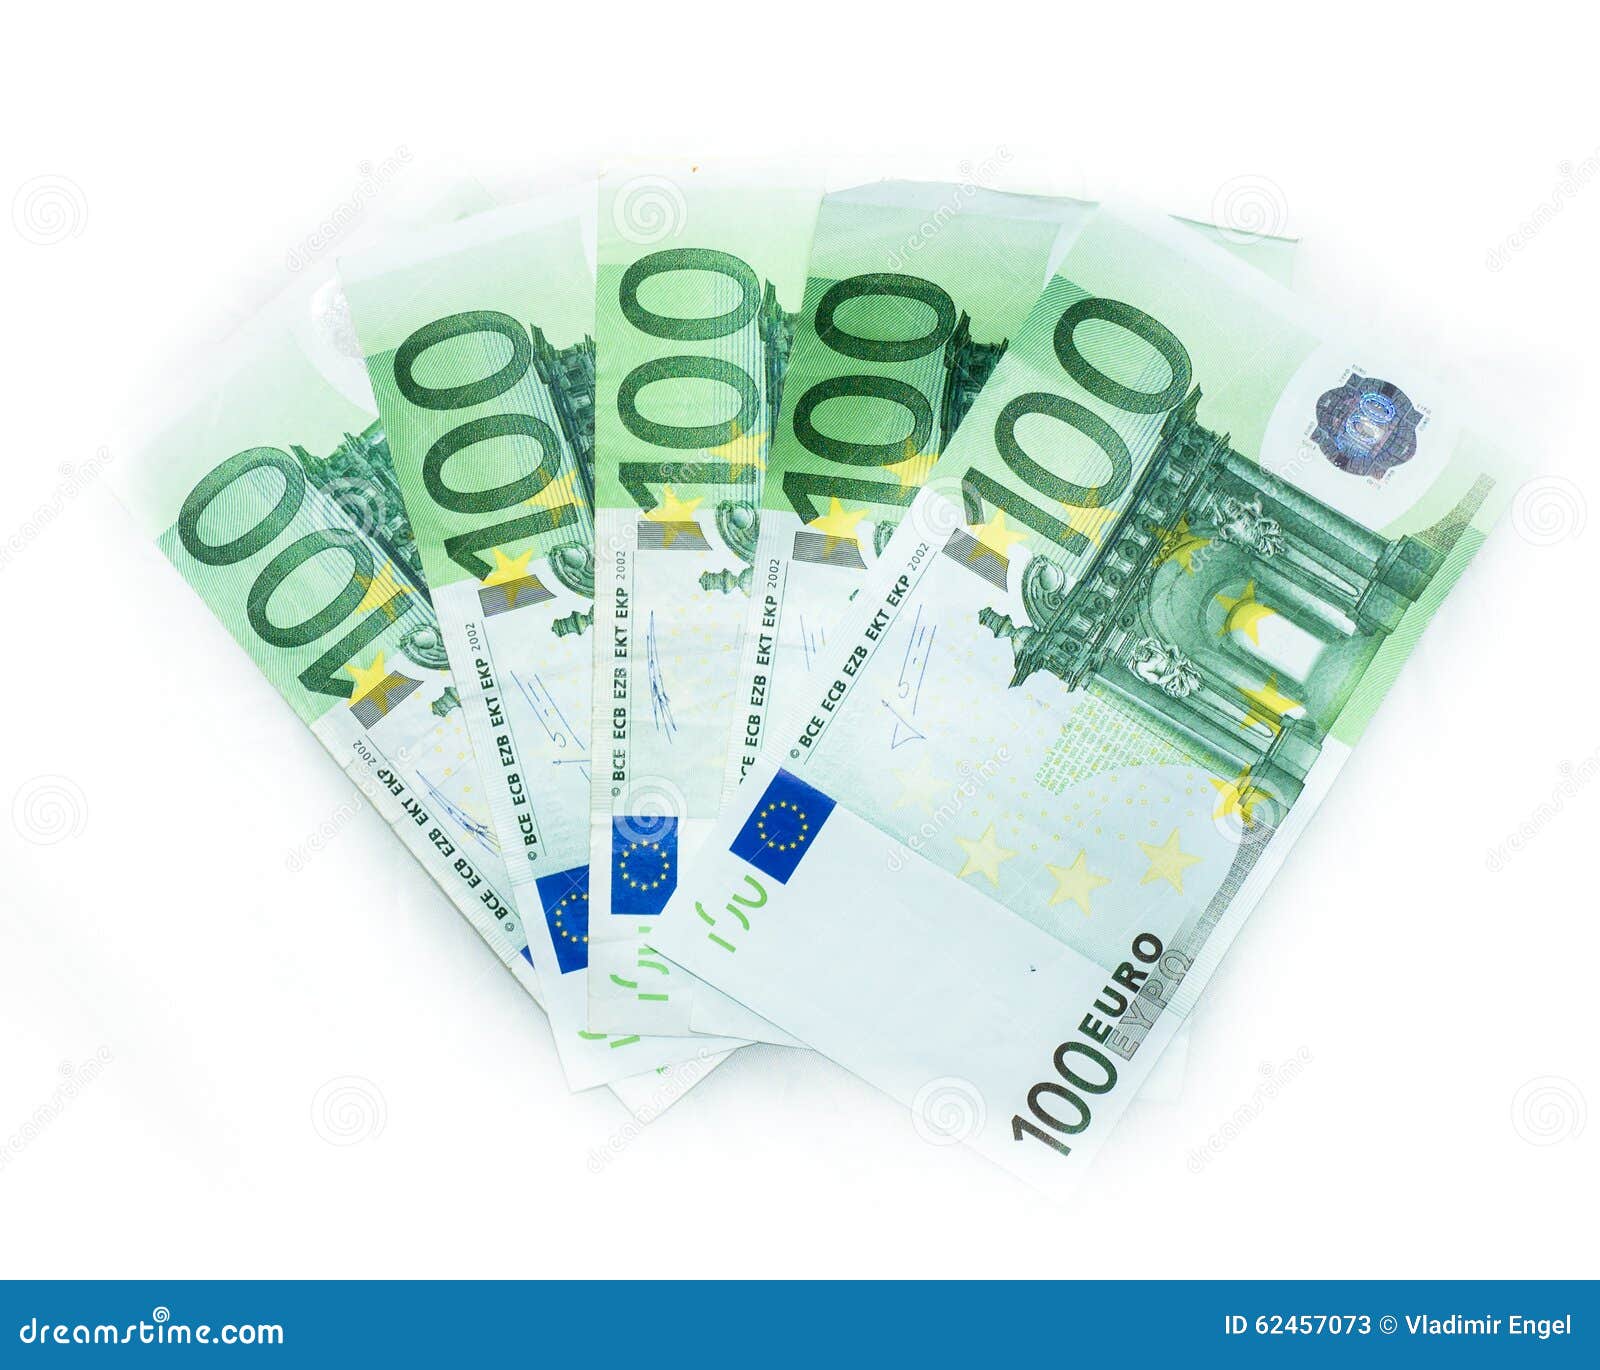 100 Euro Schein Muster : PDF-Euroscheine am PC ausfüllen ...